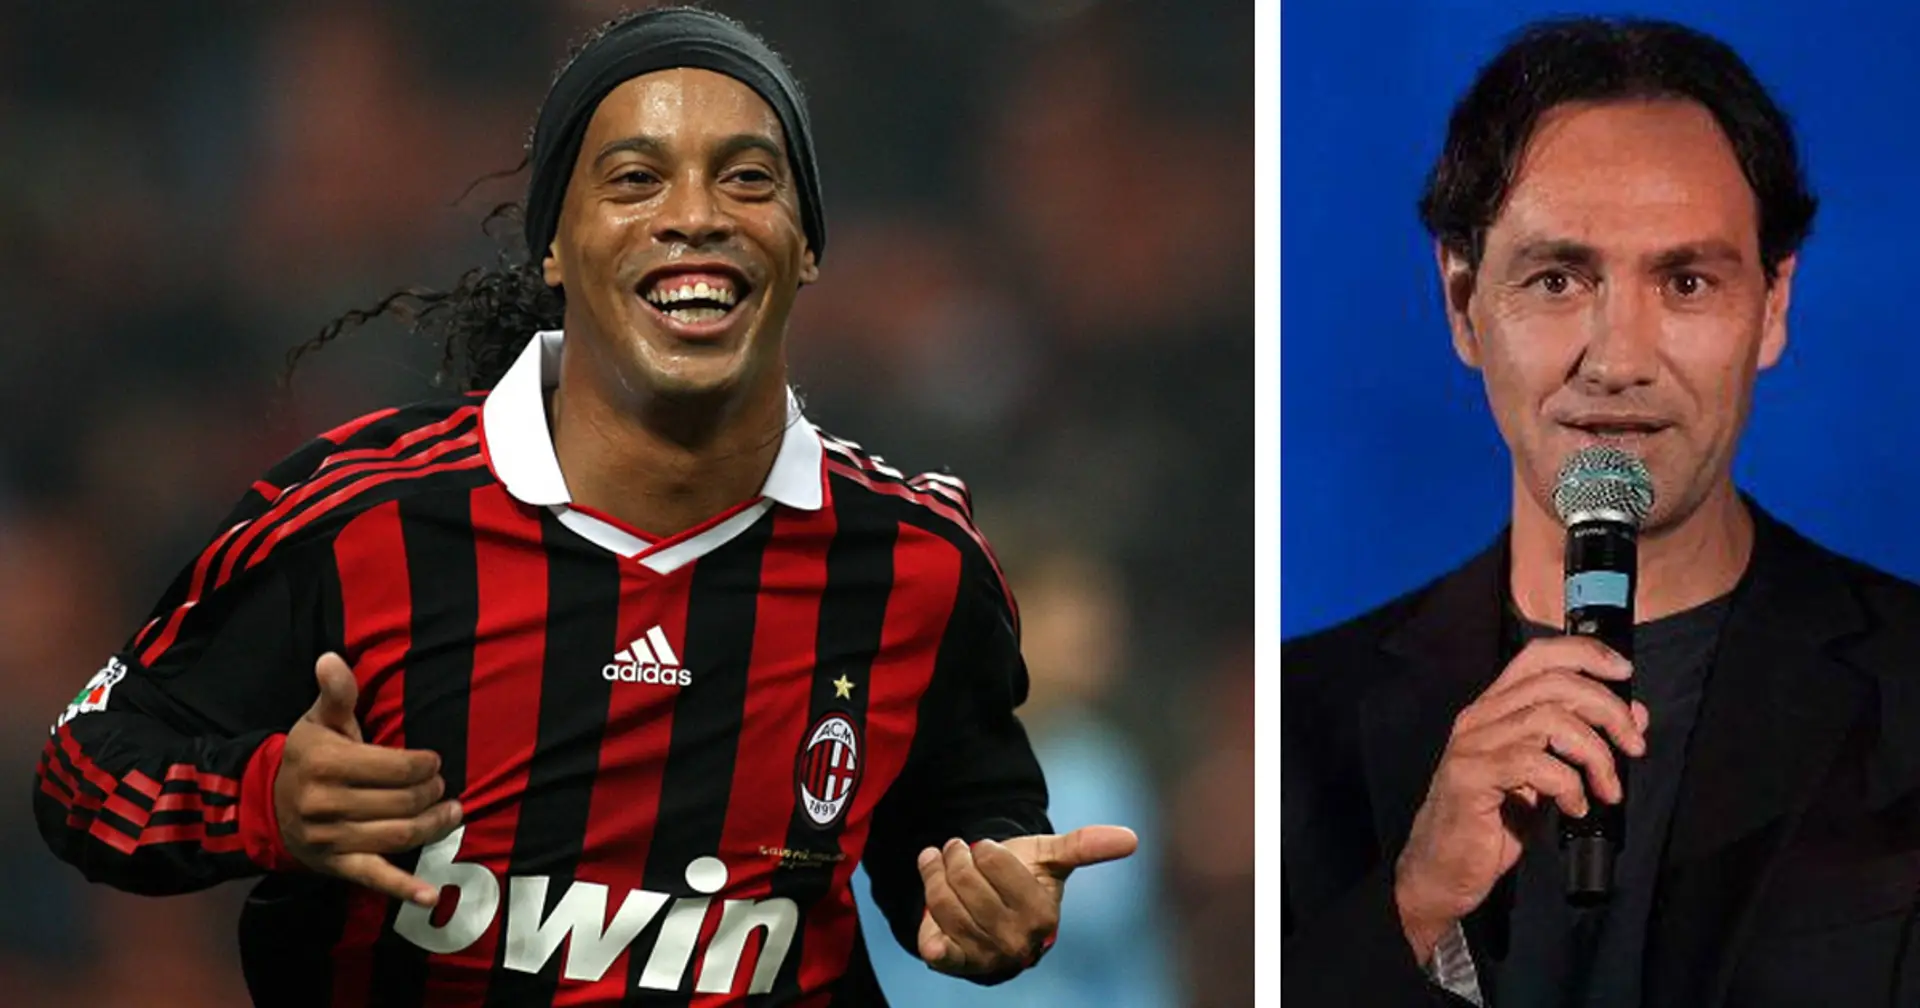 "Terribile in allenamento, ma correvo per lui": Nesta svela un retroscena su Ronaldinho ai tempi del Milan